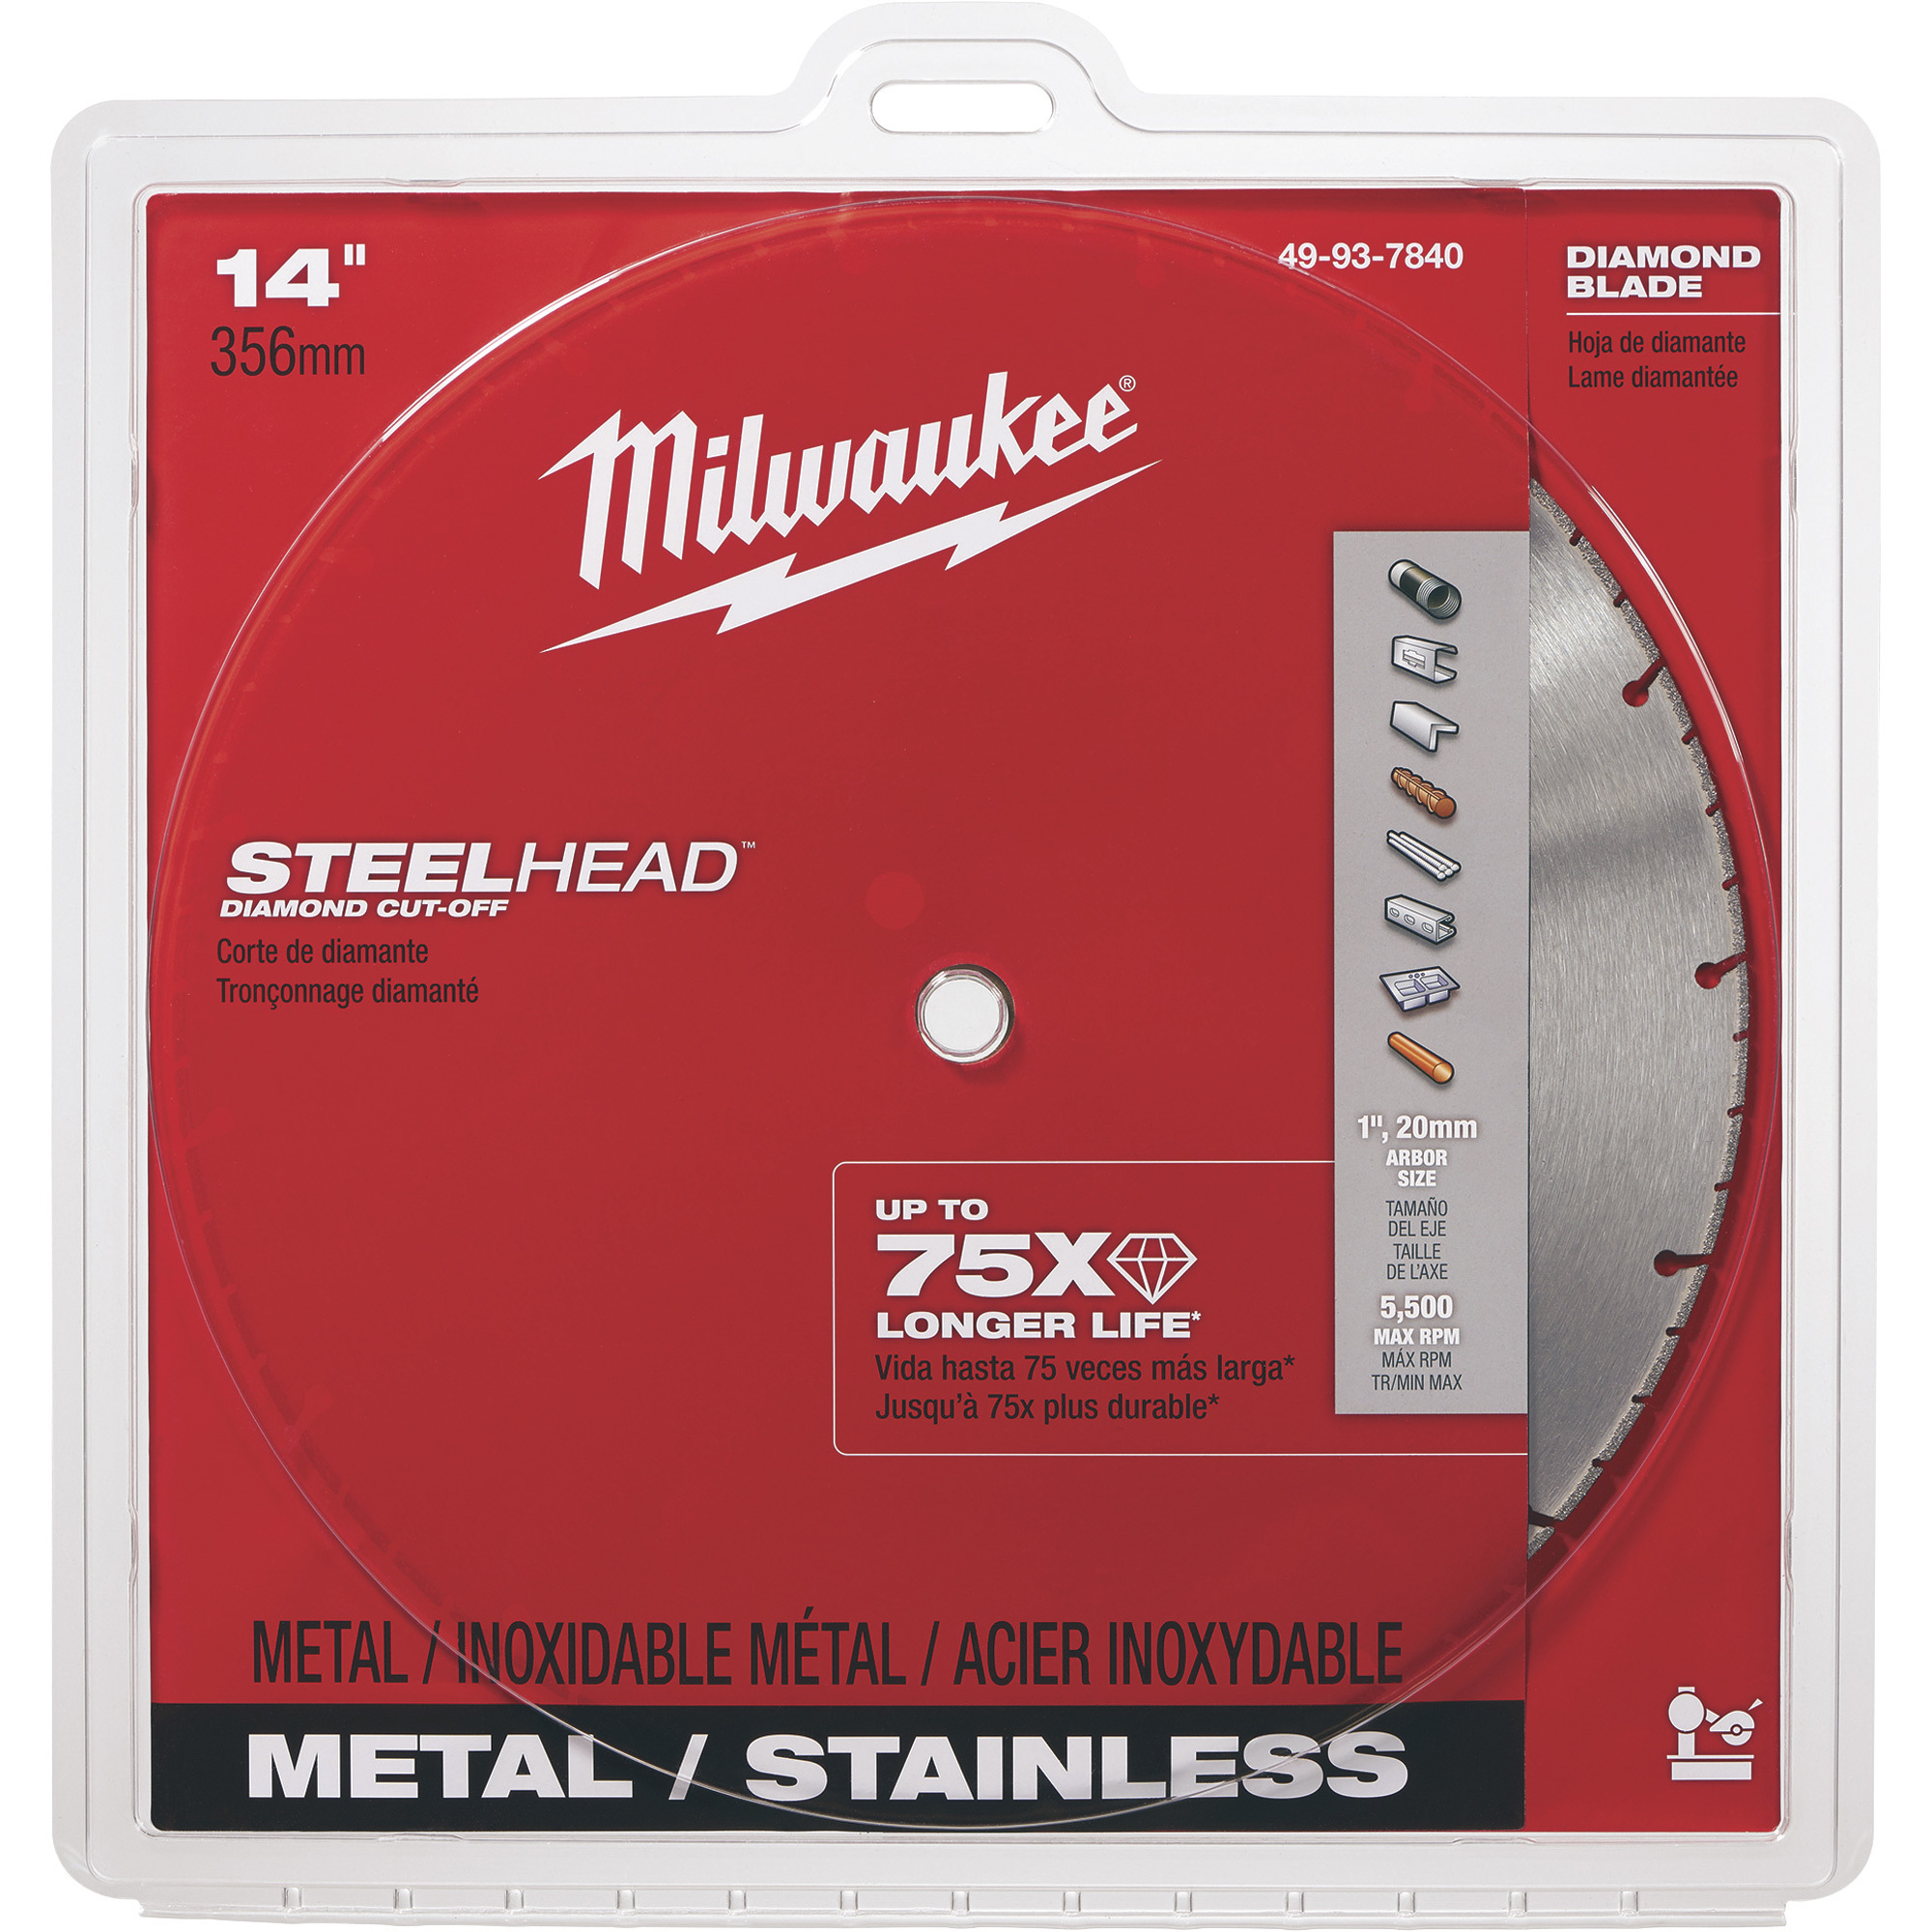 Milwaukee SteelHead Diamond Cutoff Blade, Model 49-93-7840